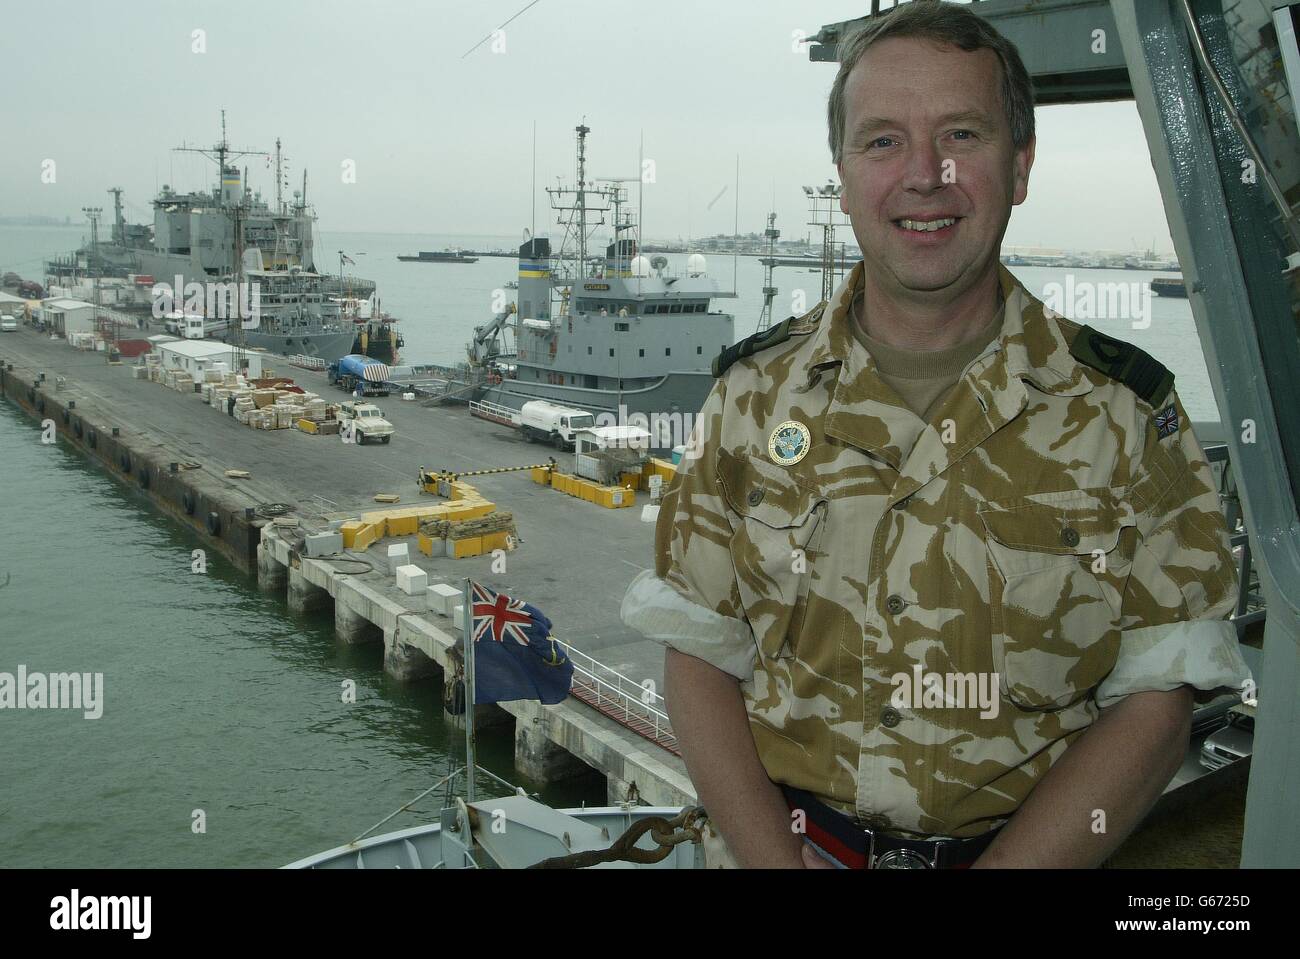 Ammiraglio posteriore David Snelson - il comandante della Marina Task Force - a bordo della RFA Diligence nel Golfo Persico. L'ammiraglio posteriore Snelson è il capo della task force britannica guidata dall'Arc Royal ed è vice comandante congiunto delle forze di coalizione. Foto Stock